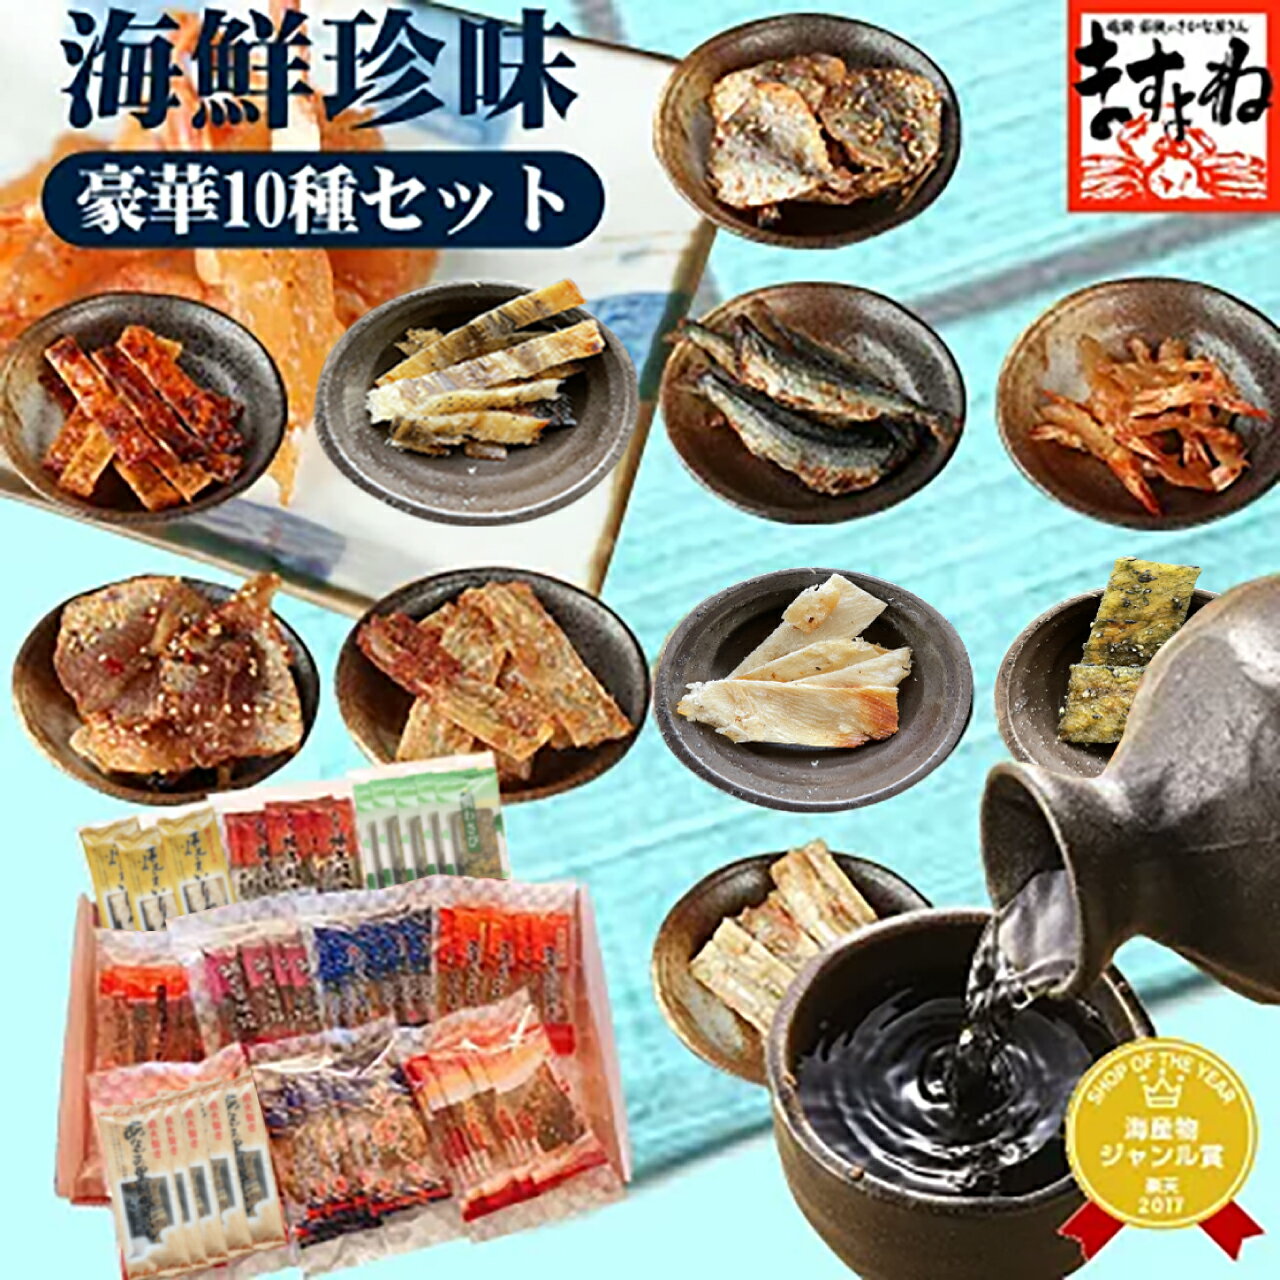 【福井県のお土産】魚介類・水産加工品